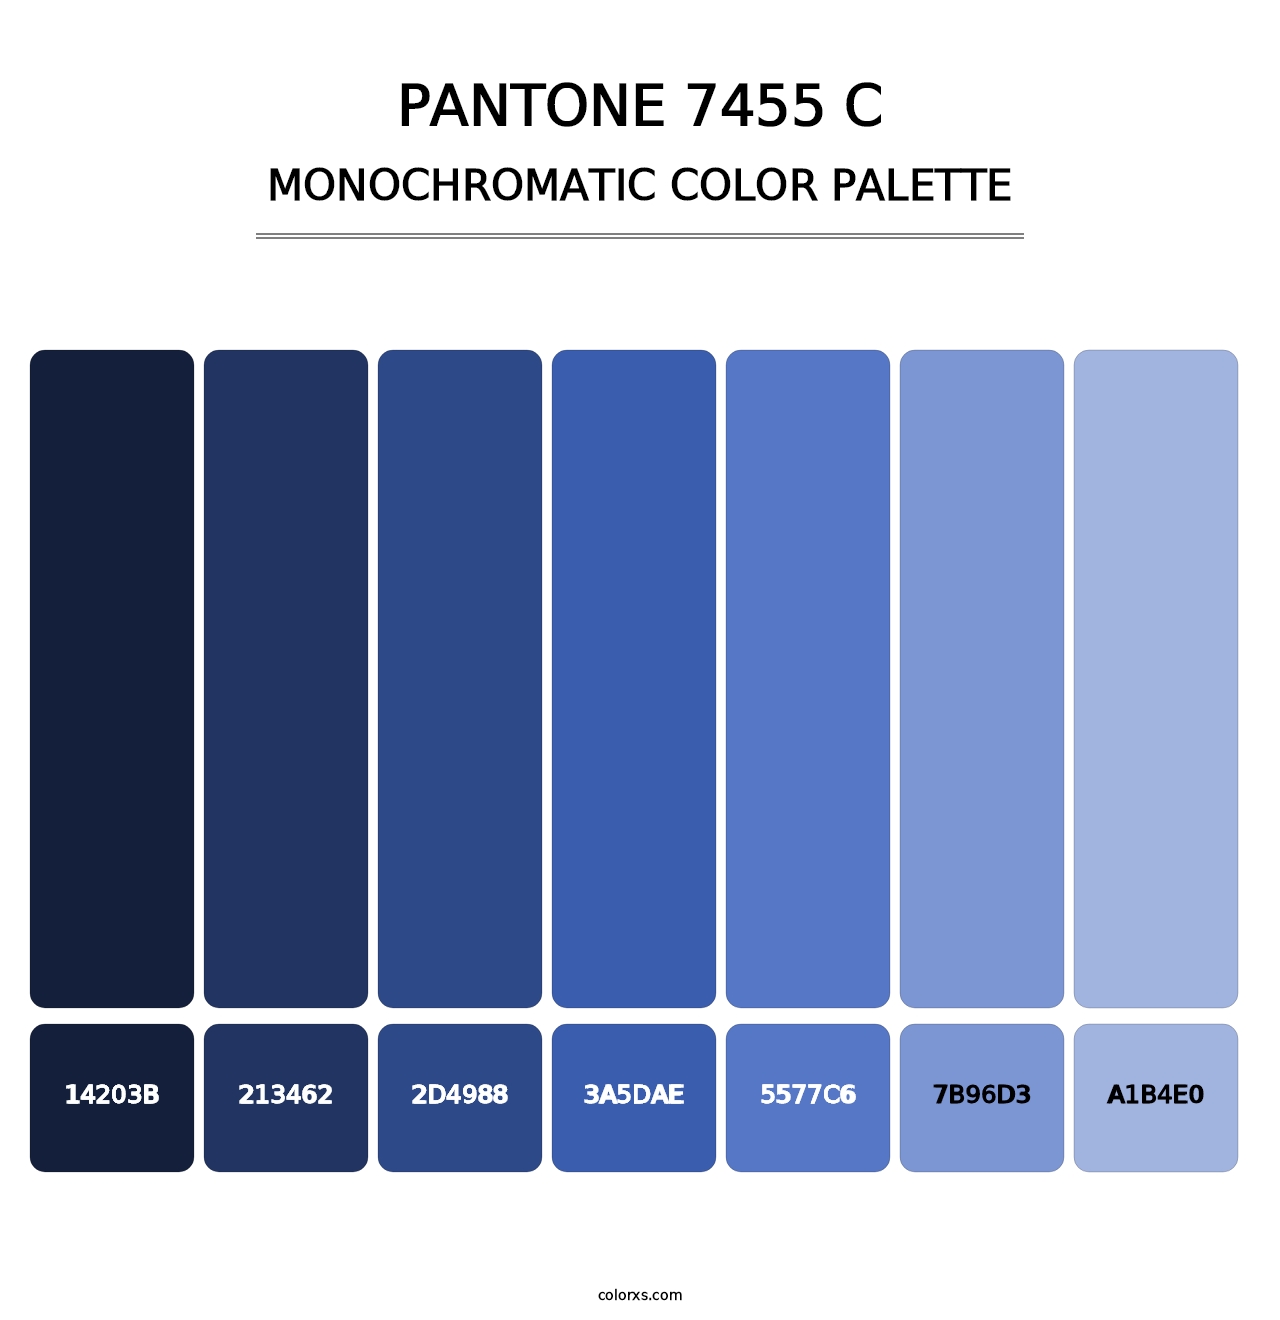 PANTONE 7455 C - Monochromatic Color Palette